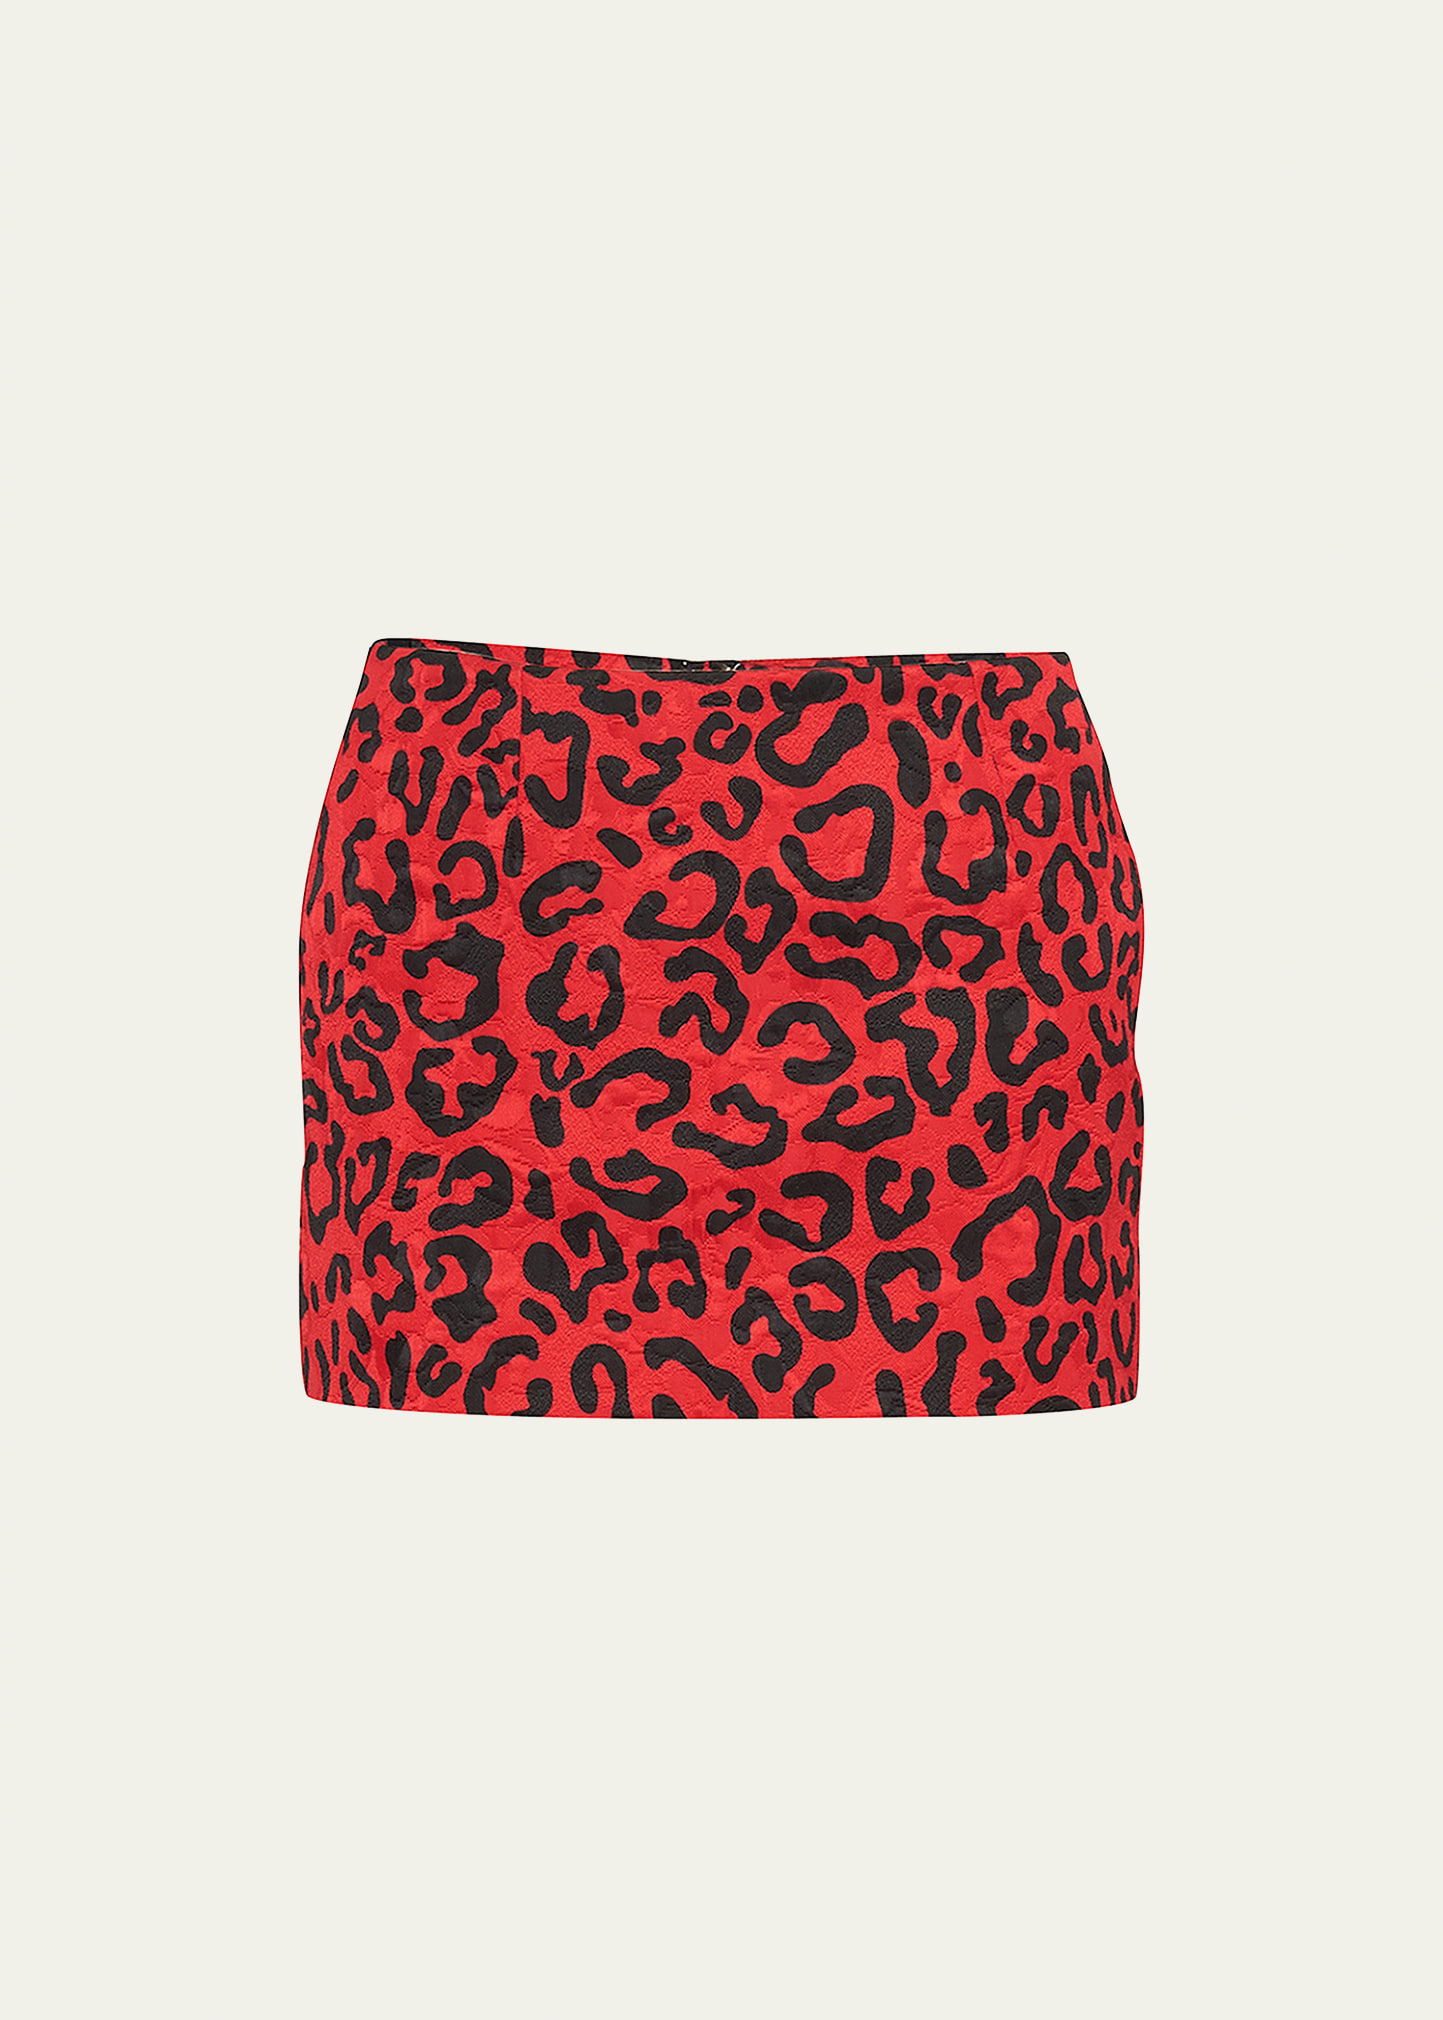 Leopard Brocade Mini Skirt